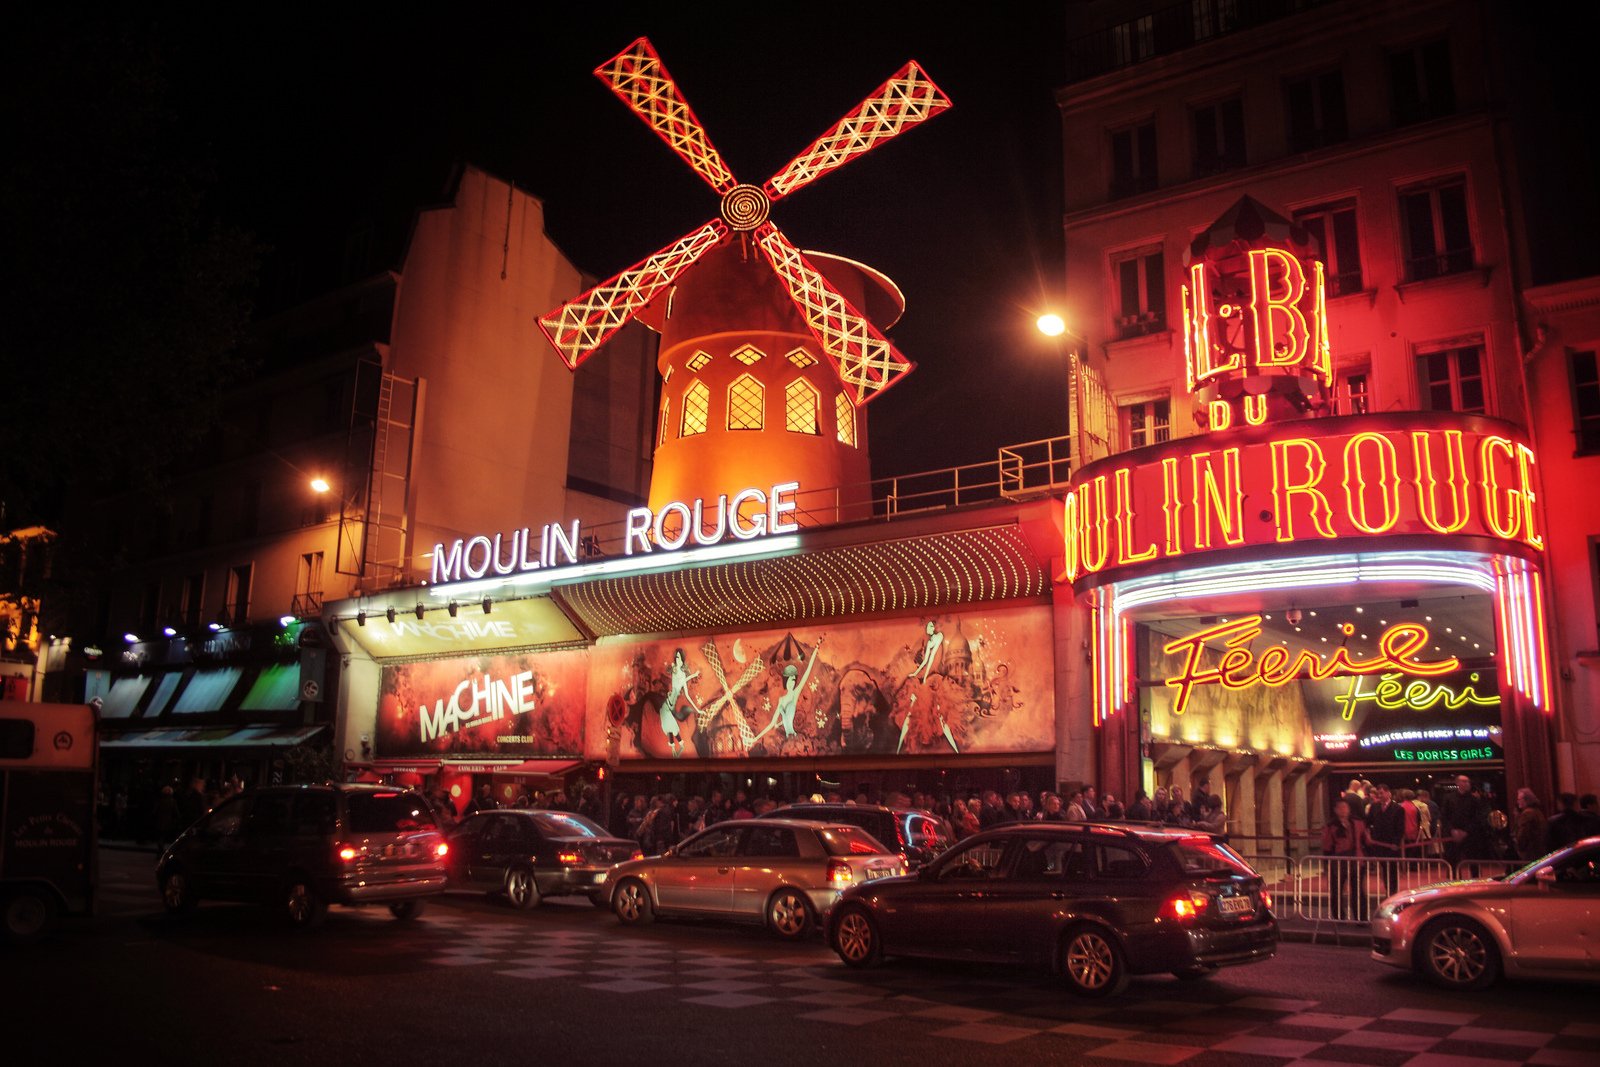 Villa Royale Pigalle - Moulin Rouge - Féérie show